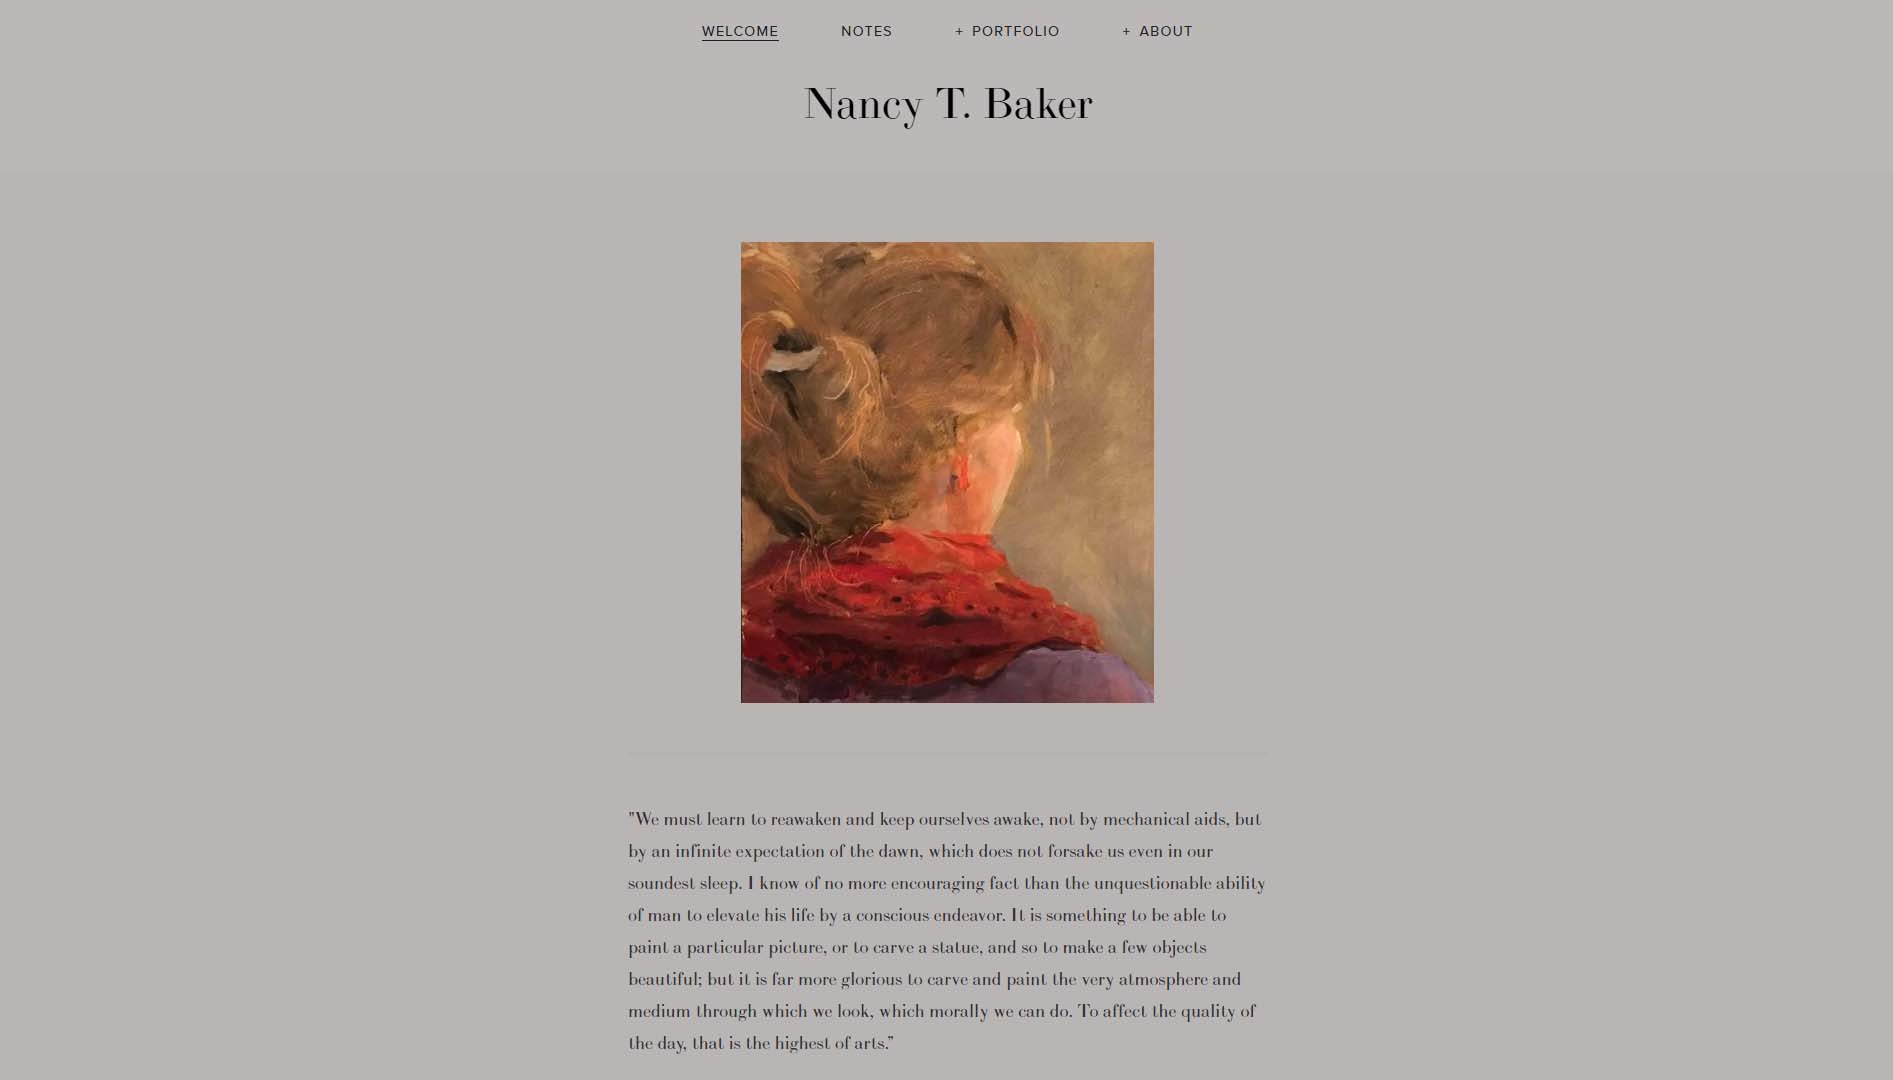 Nancy T. Baker, artist